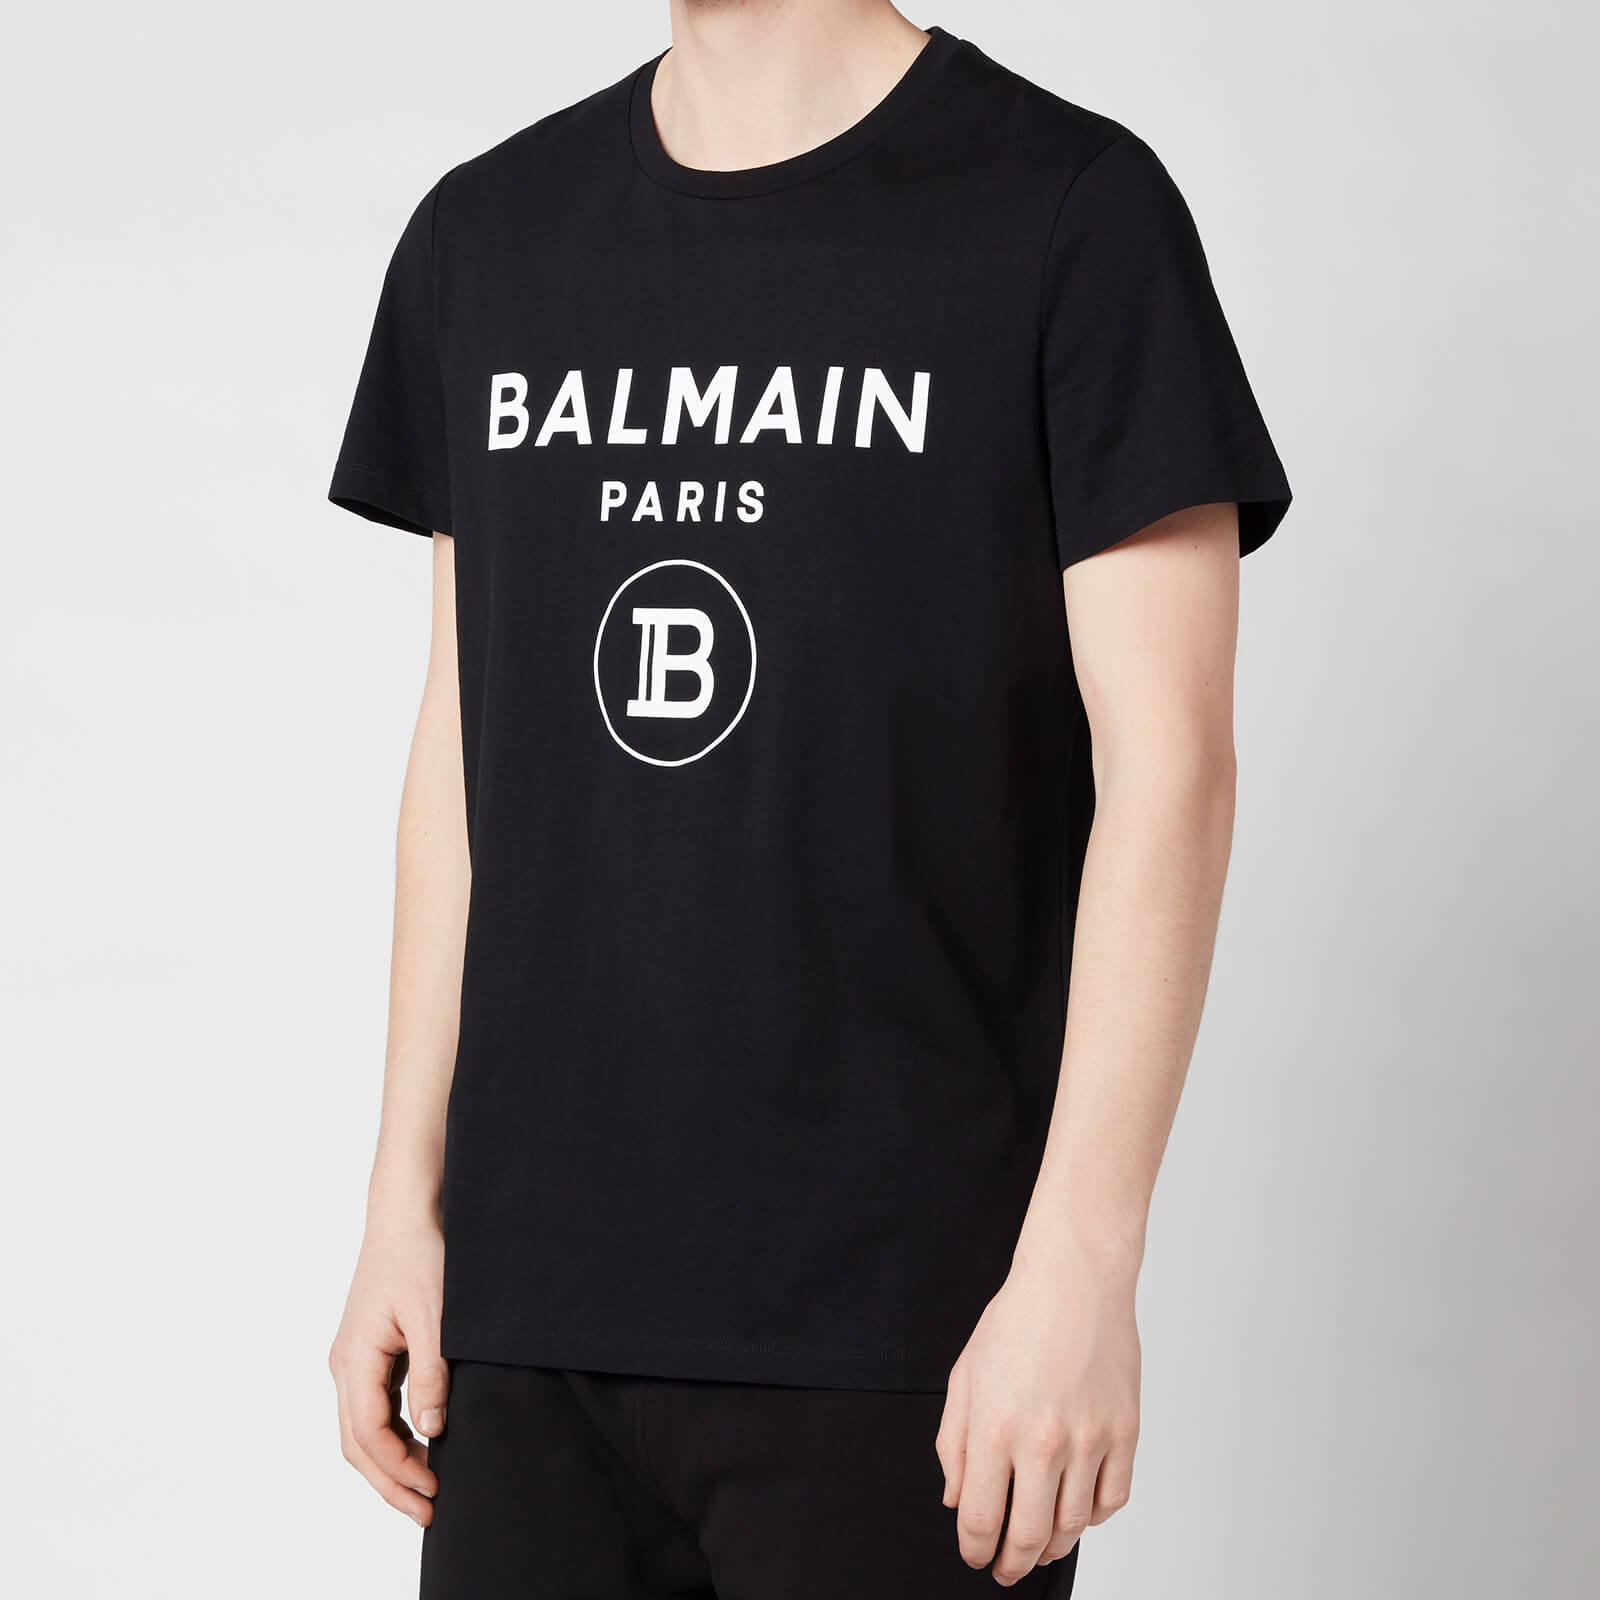 Balmain Men's Printed T-Shirt - Black - M